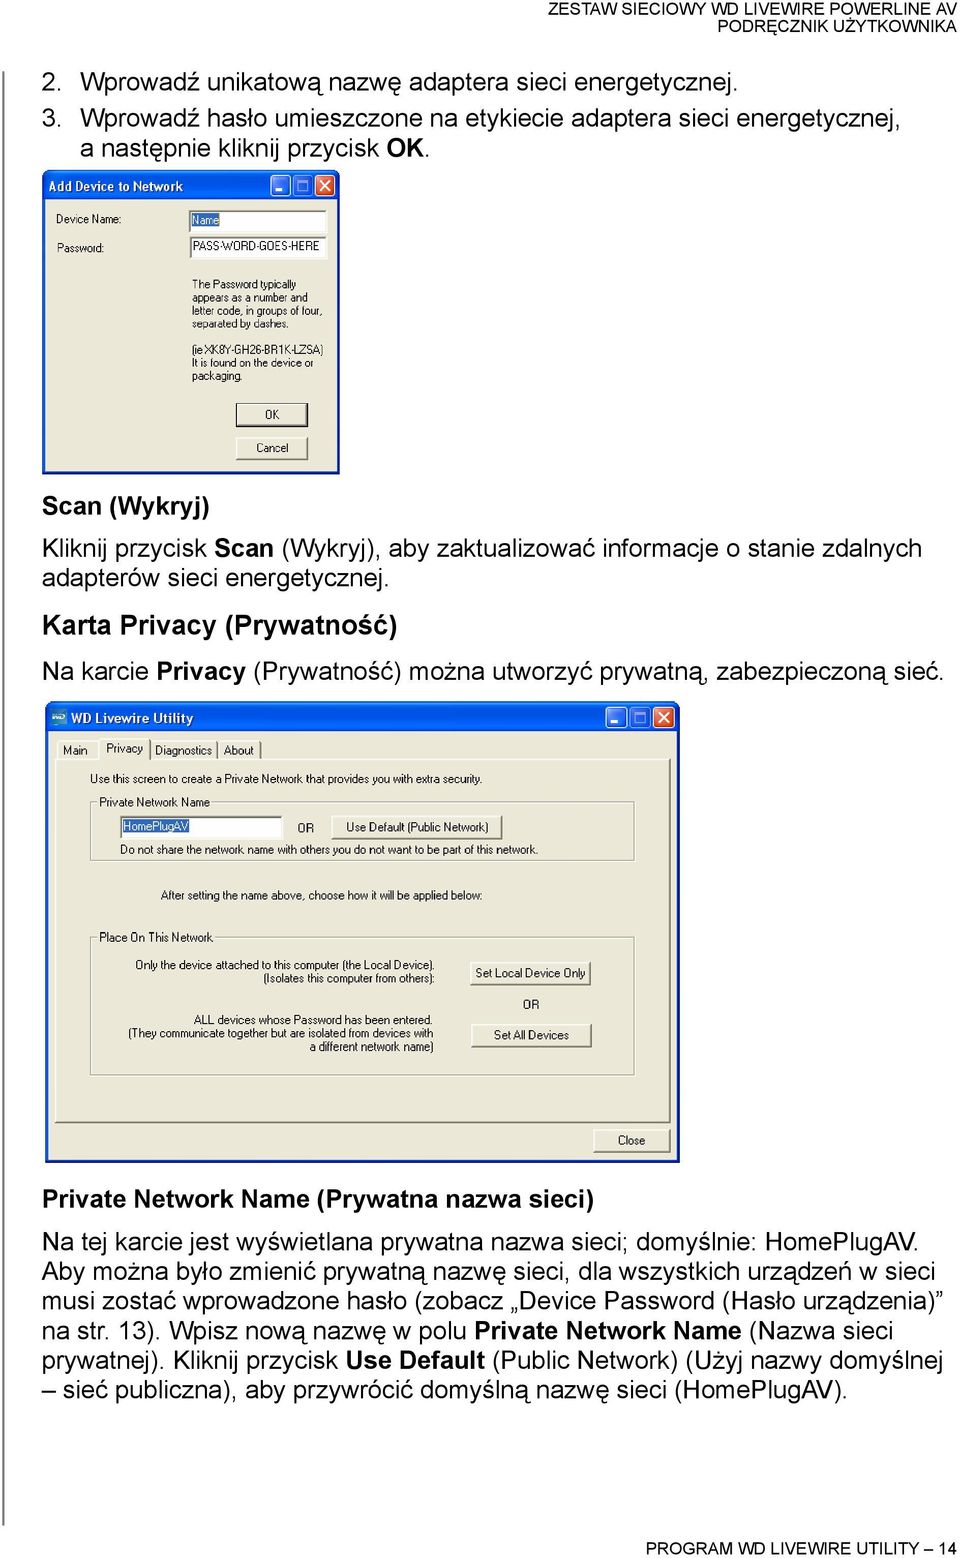 Karta Privacy (Prywatność) Na karcie Privacy (Prywatność) można utworzyć prywatną, zabezpieczoną sieć.